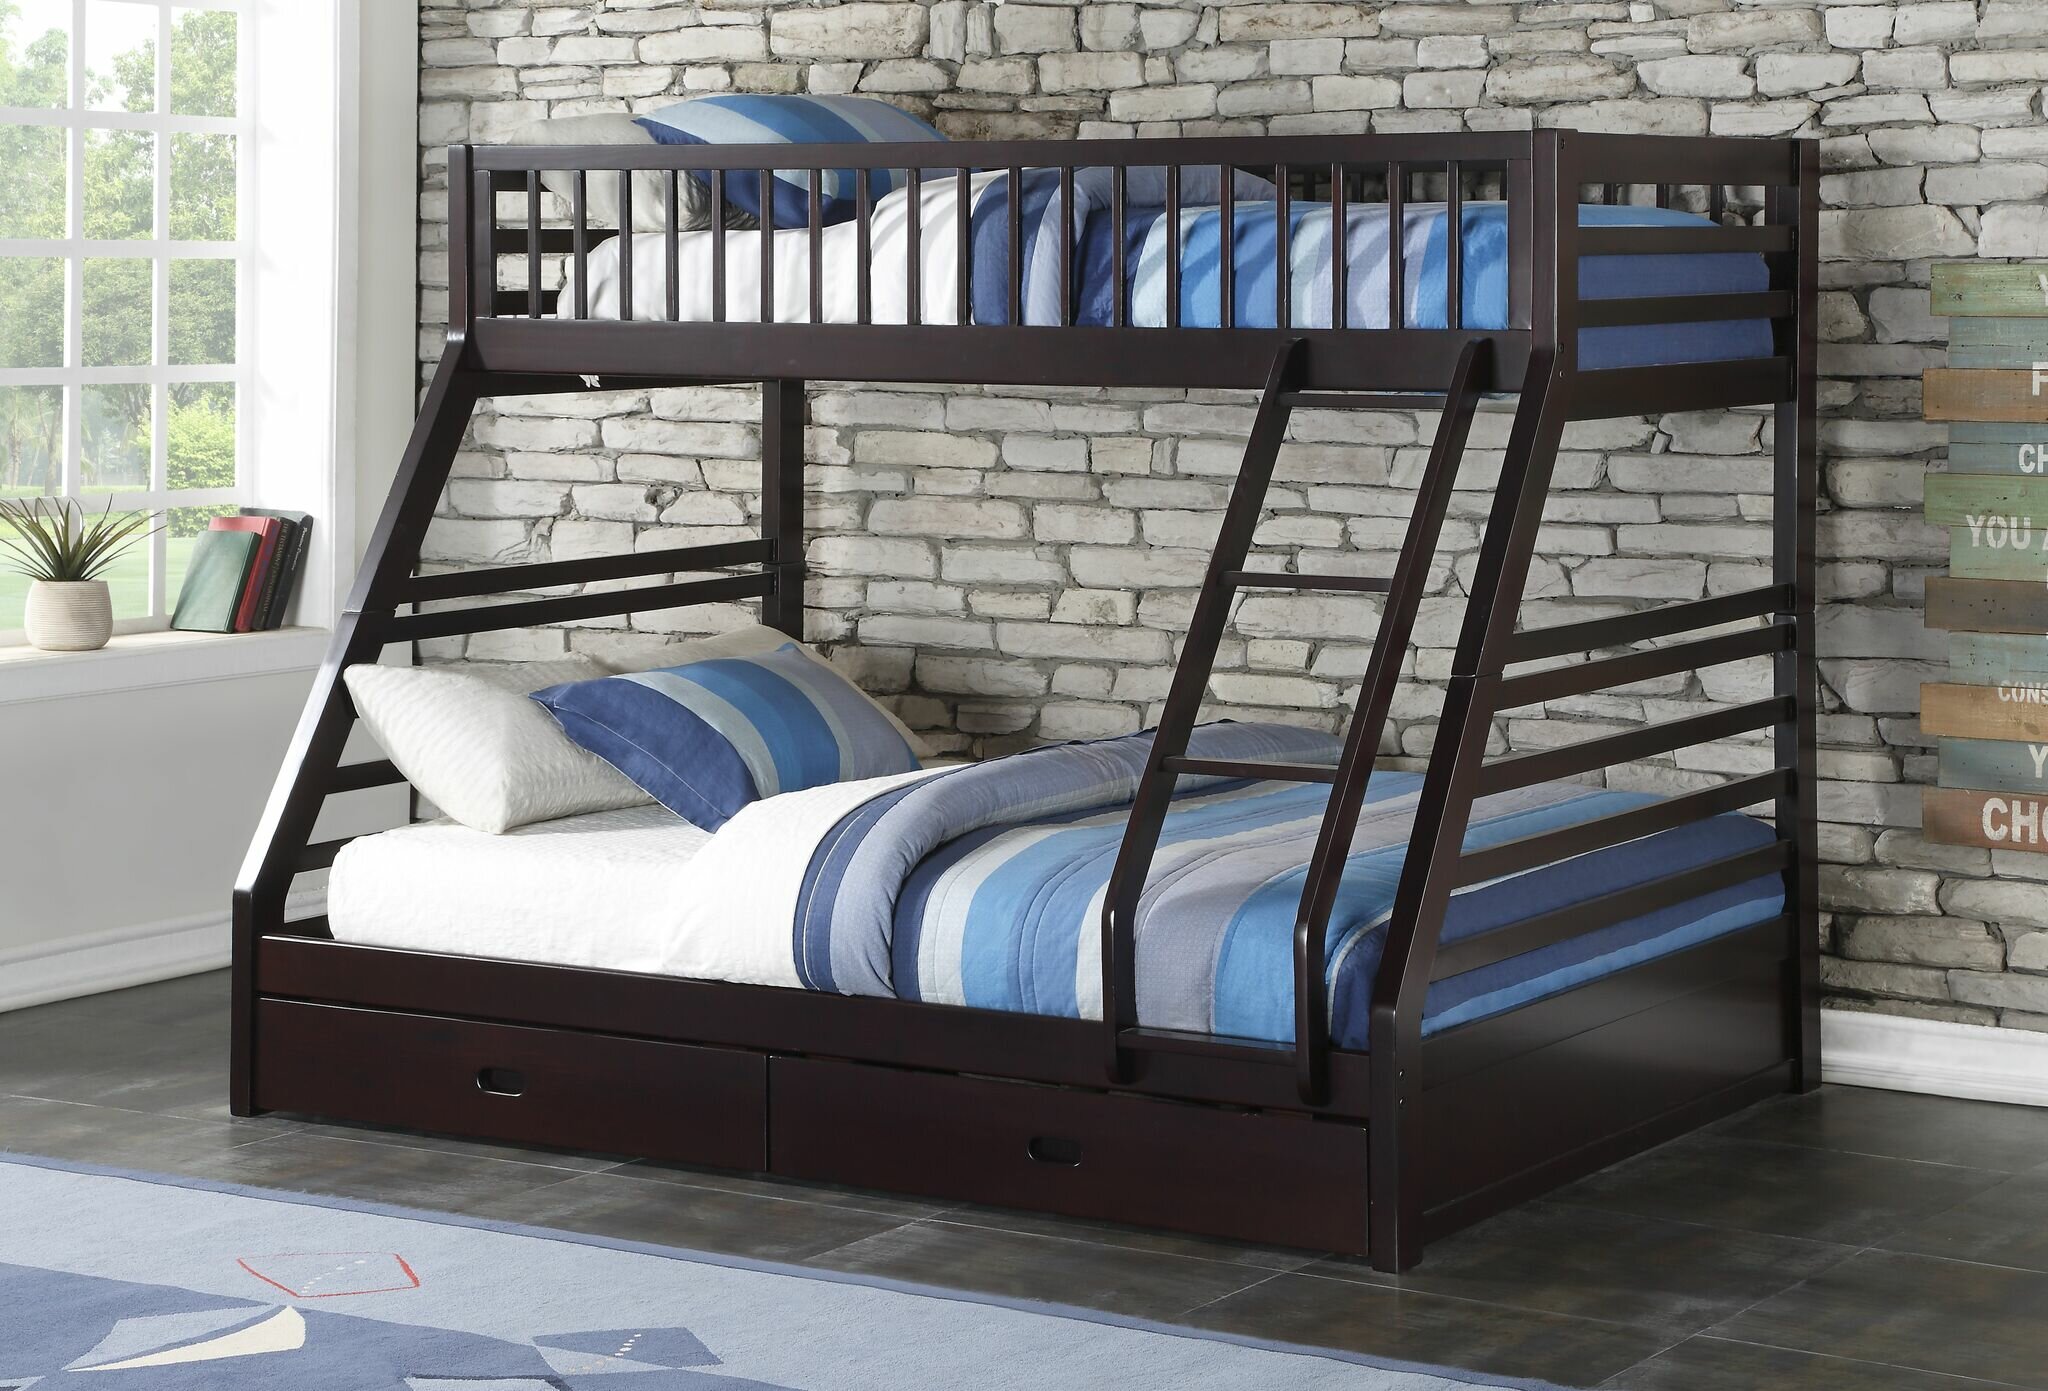 Harriet Bee Haslingden Twin XL Over Queen Bunk Bed with Drawers 